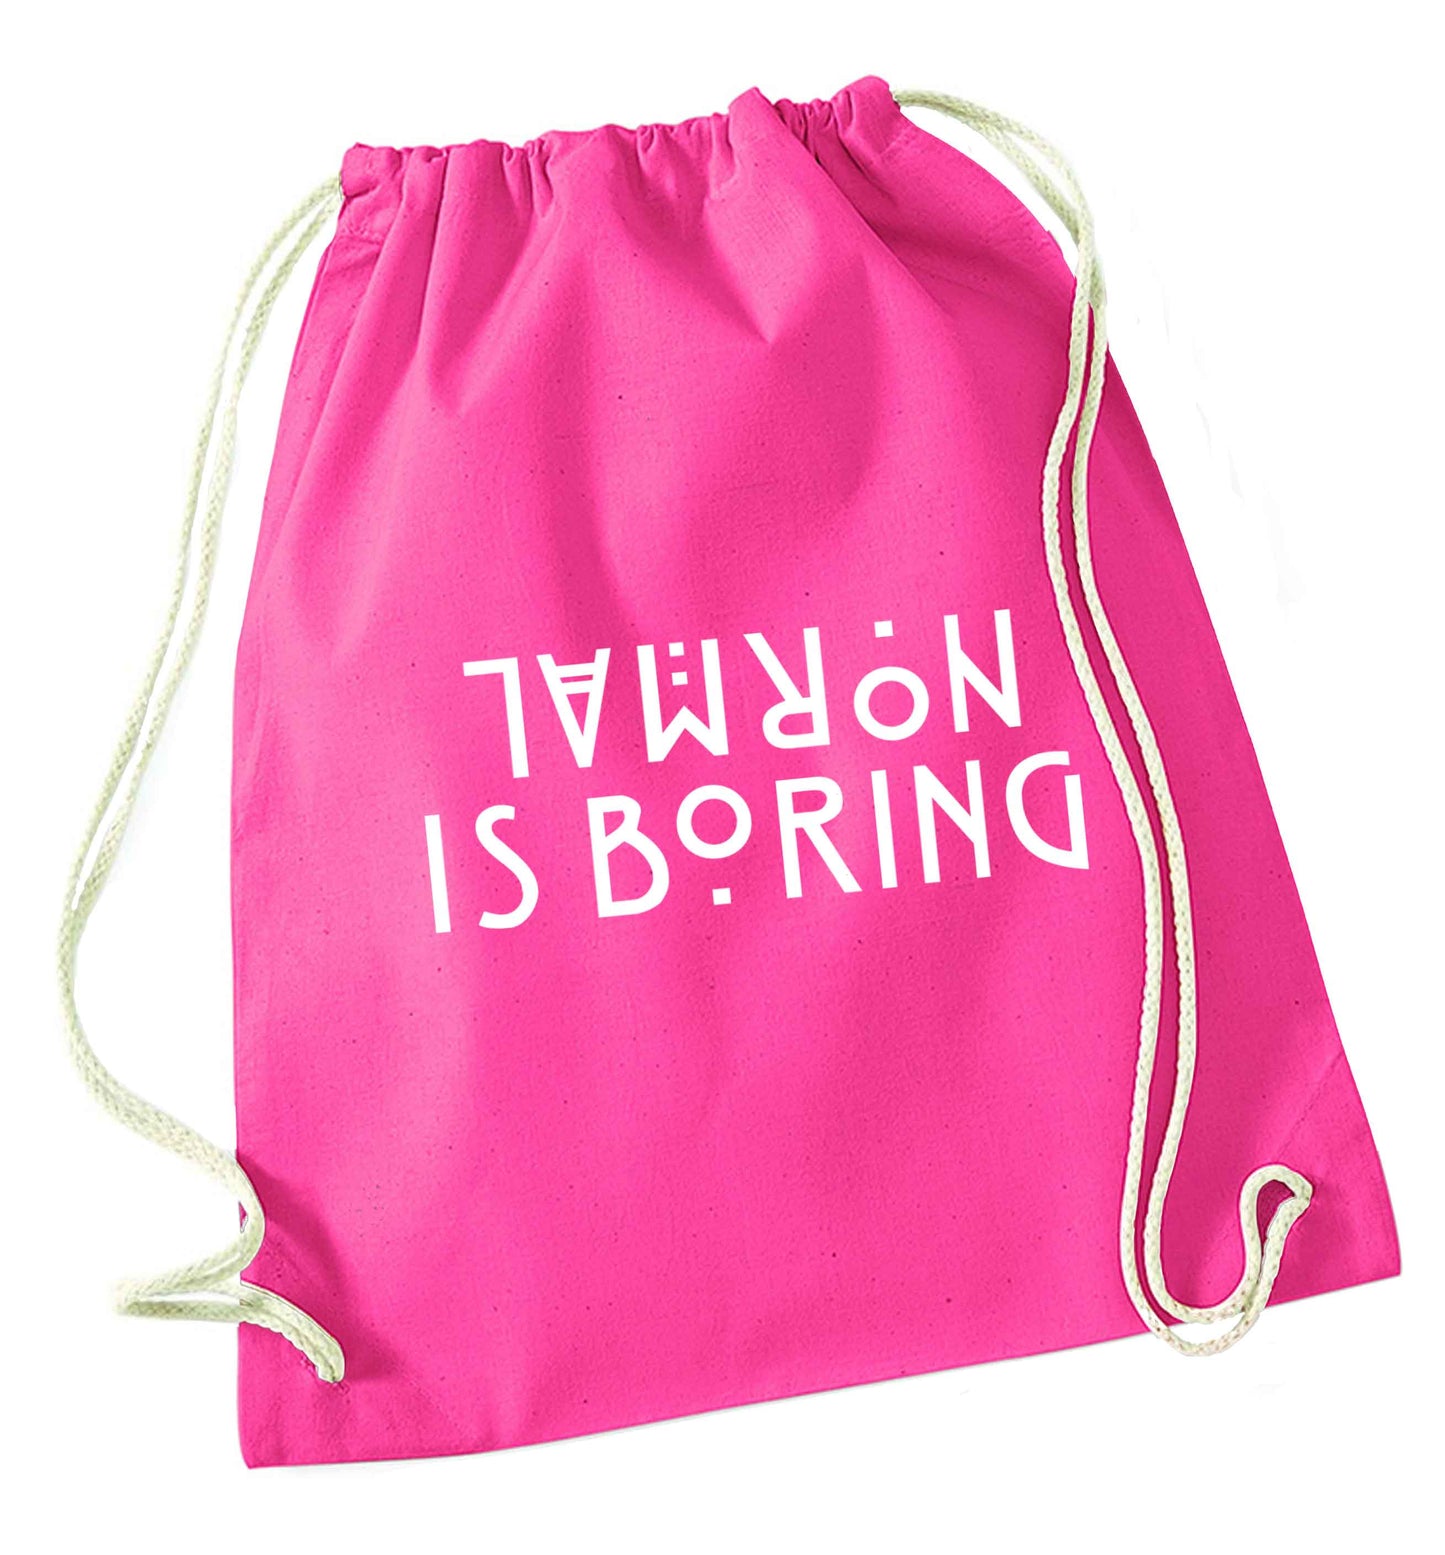 Normal is boring pink drawstring bag